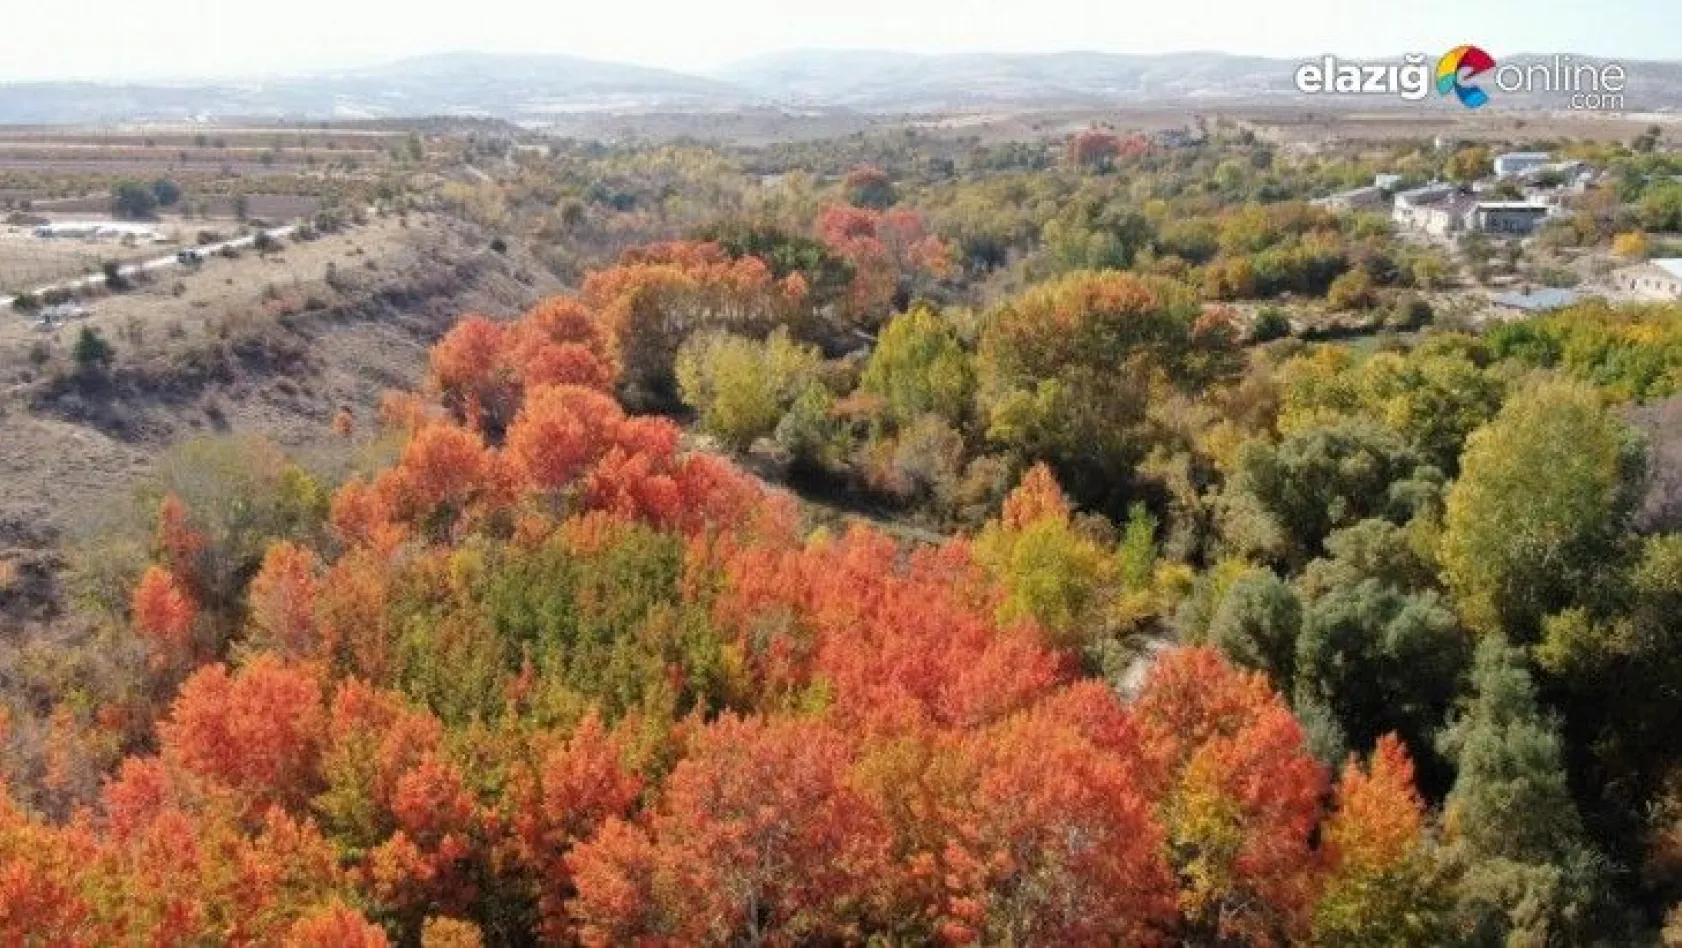 Elazığ'da sonbaharda rengarenk olan ağaçlar havadan görüntülendi